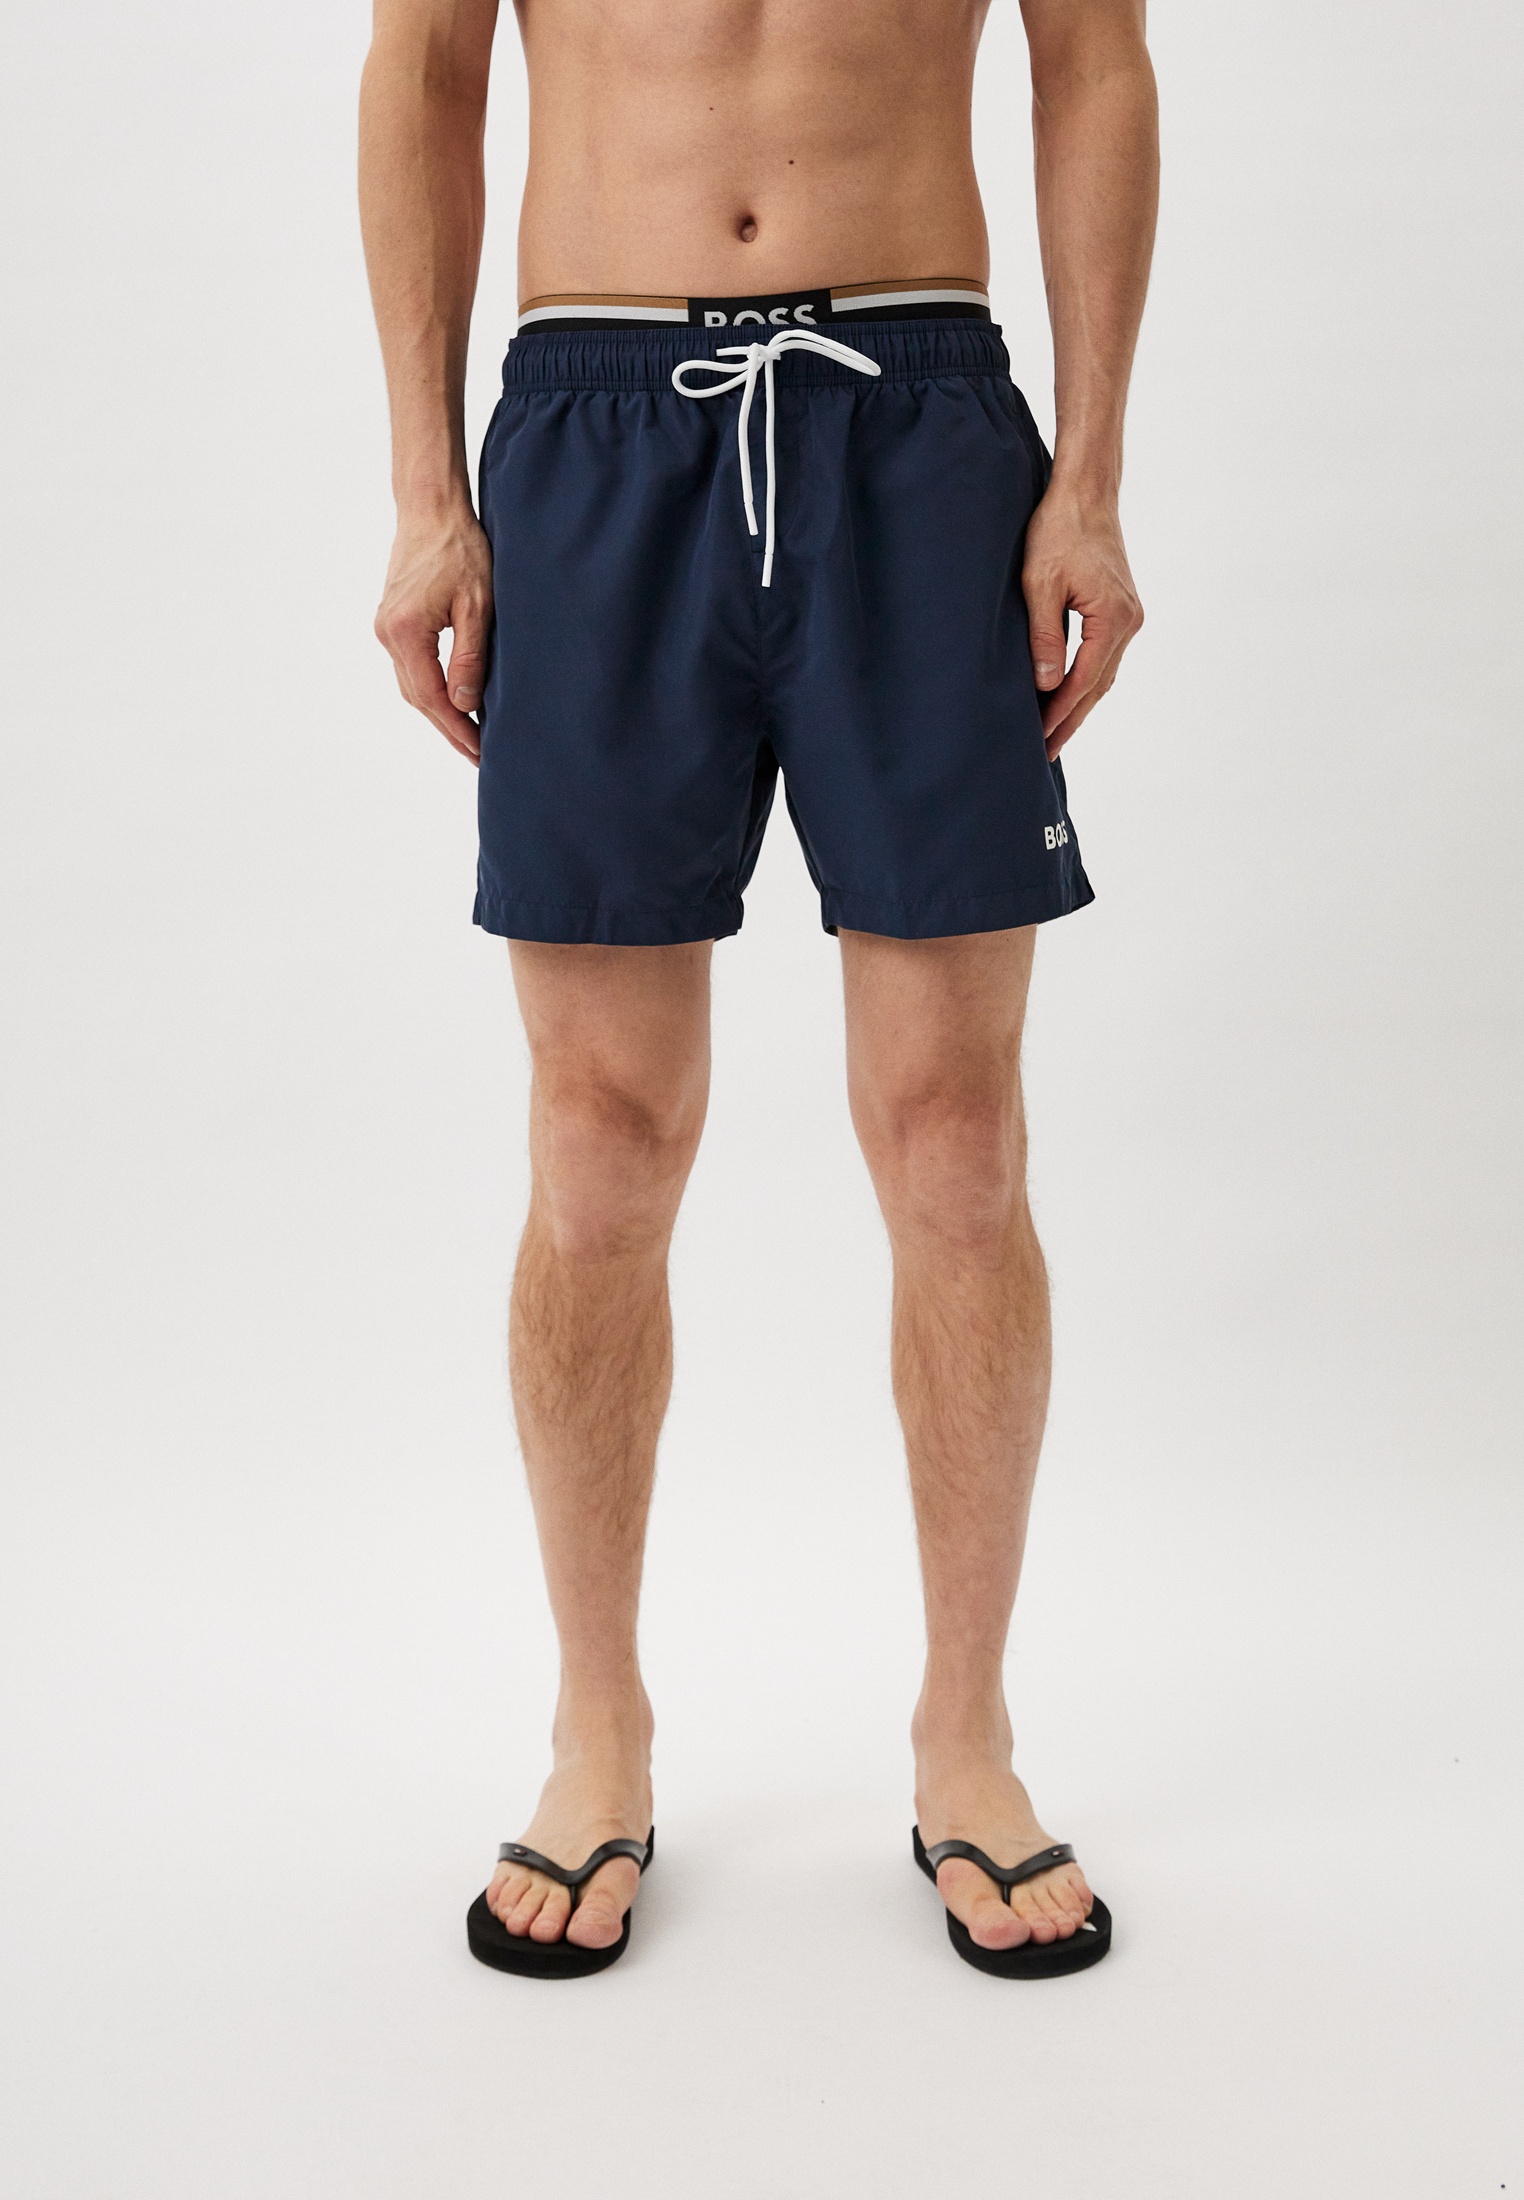 Мужские шорты для плавания Boss (Босс) 50508930: изображение 1